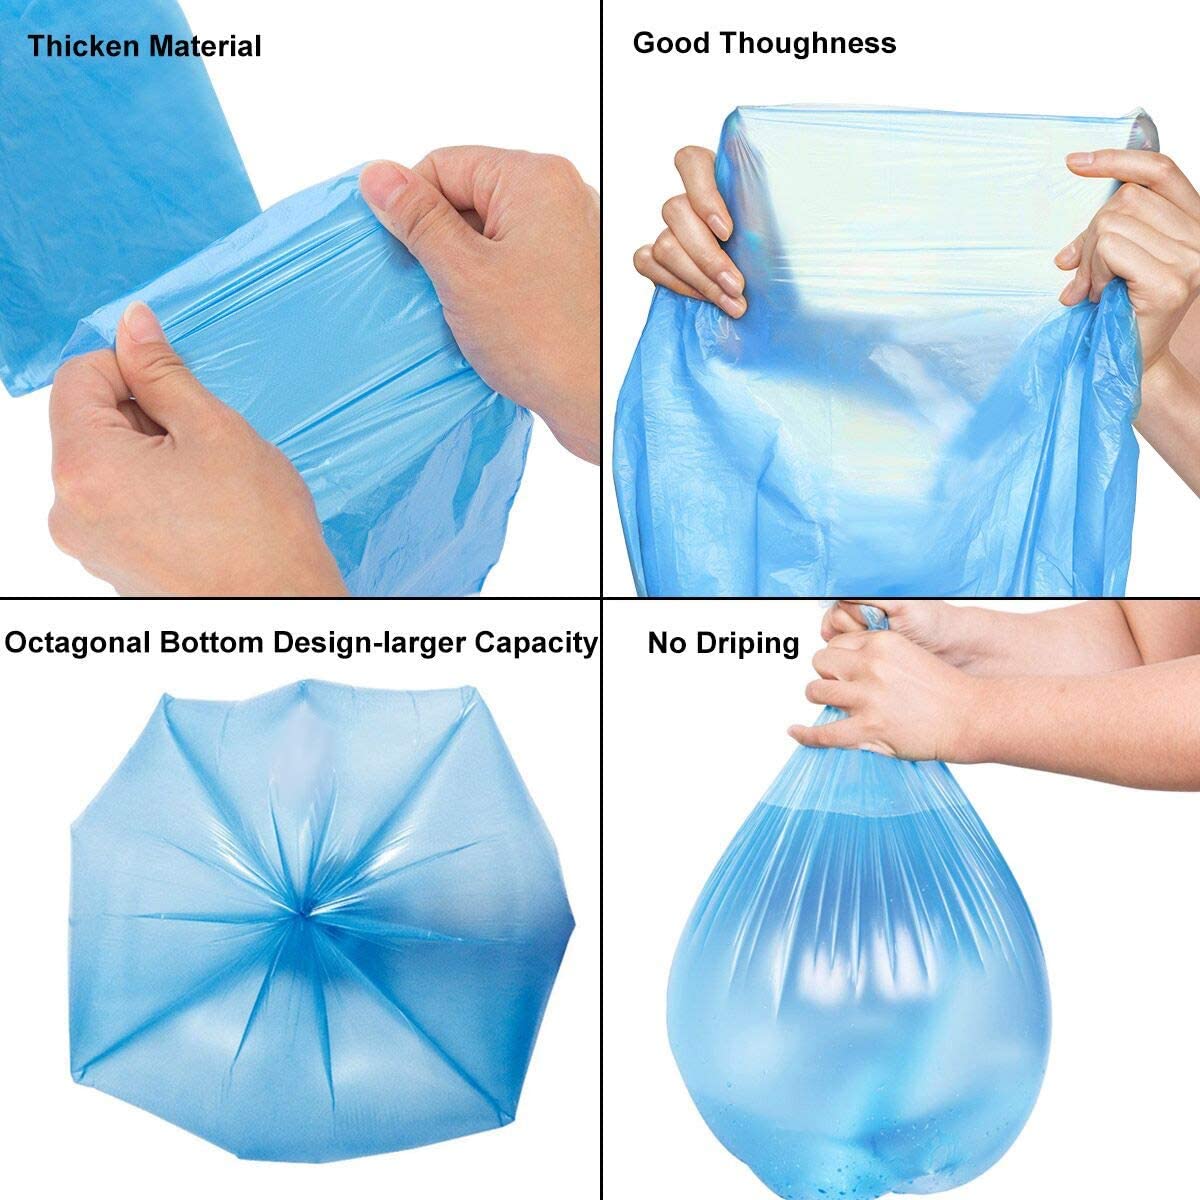 plastic refuse bags